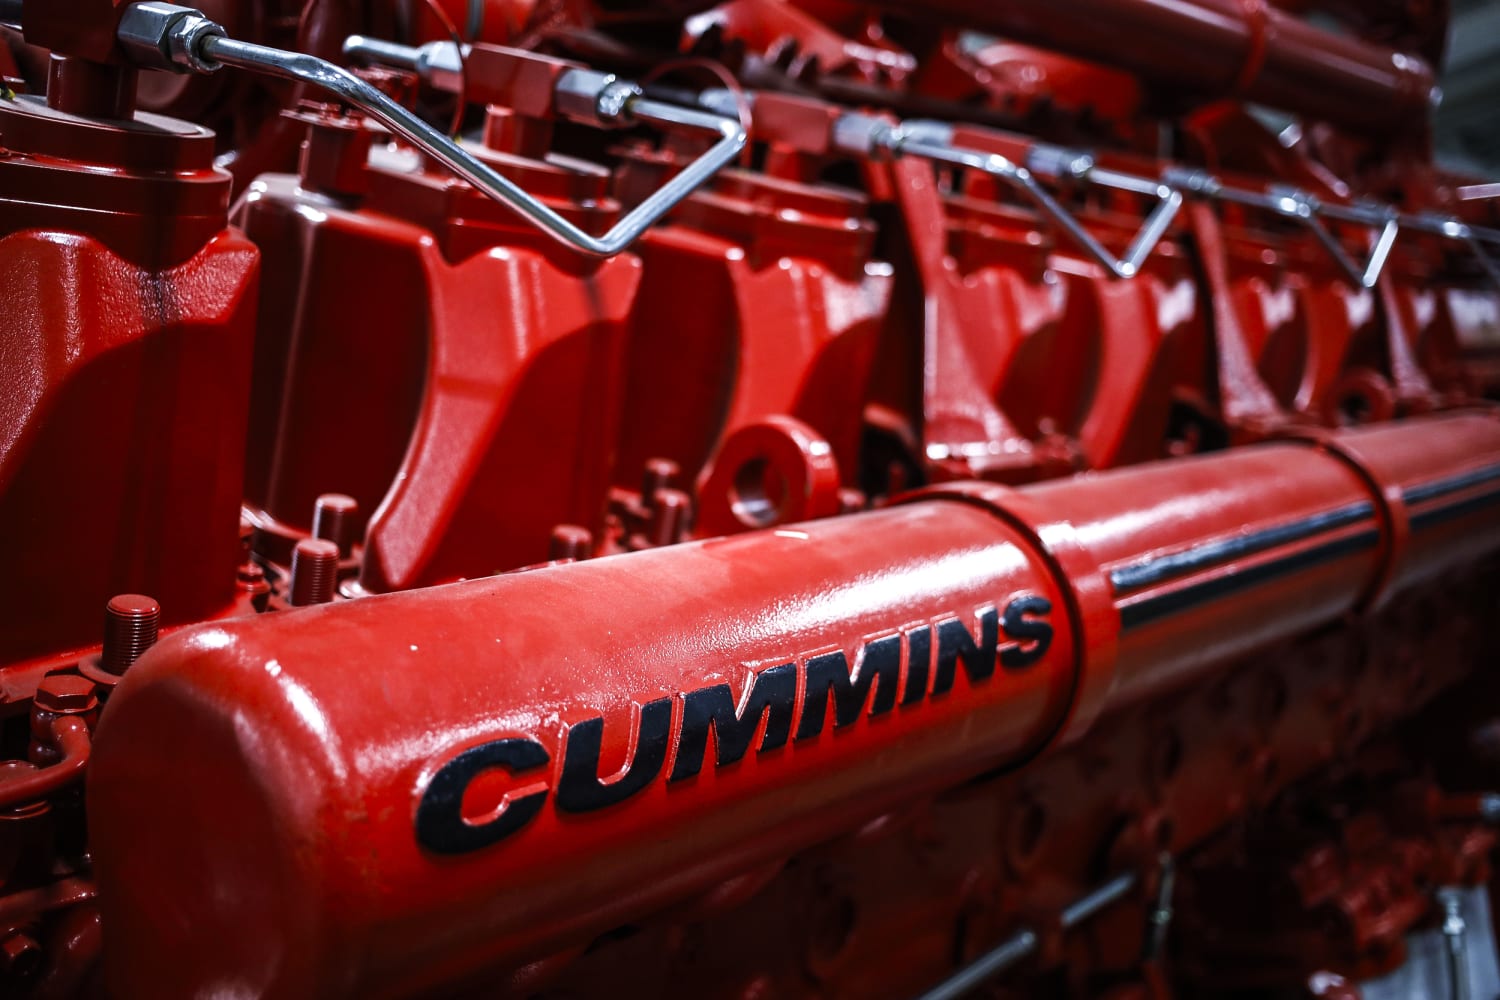 El fabricante estadounidense de motores Cummins ha recibido la mayor multa de su historia en virtud de la Ley de Aire Limpio, valorada en 1.675 millones de dólares, por acusaciones de fraude en materia de emisiones.